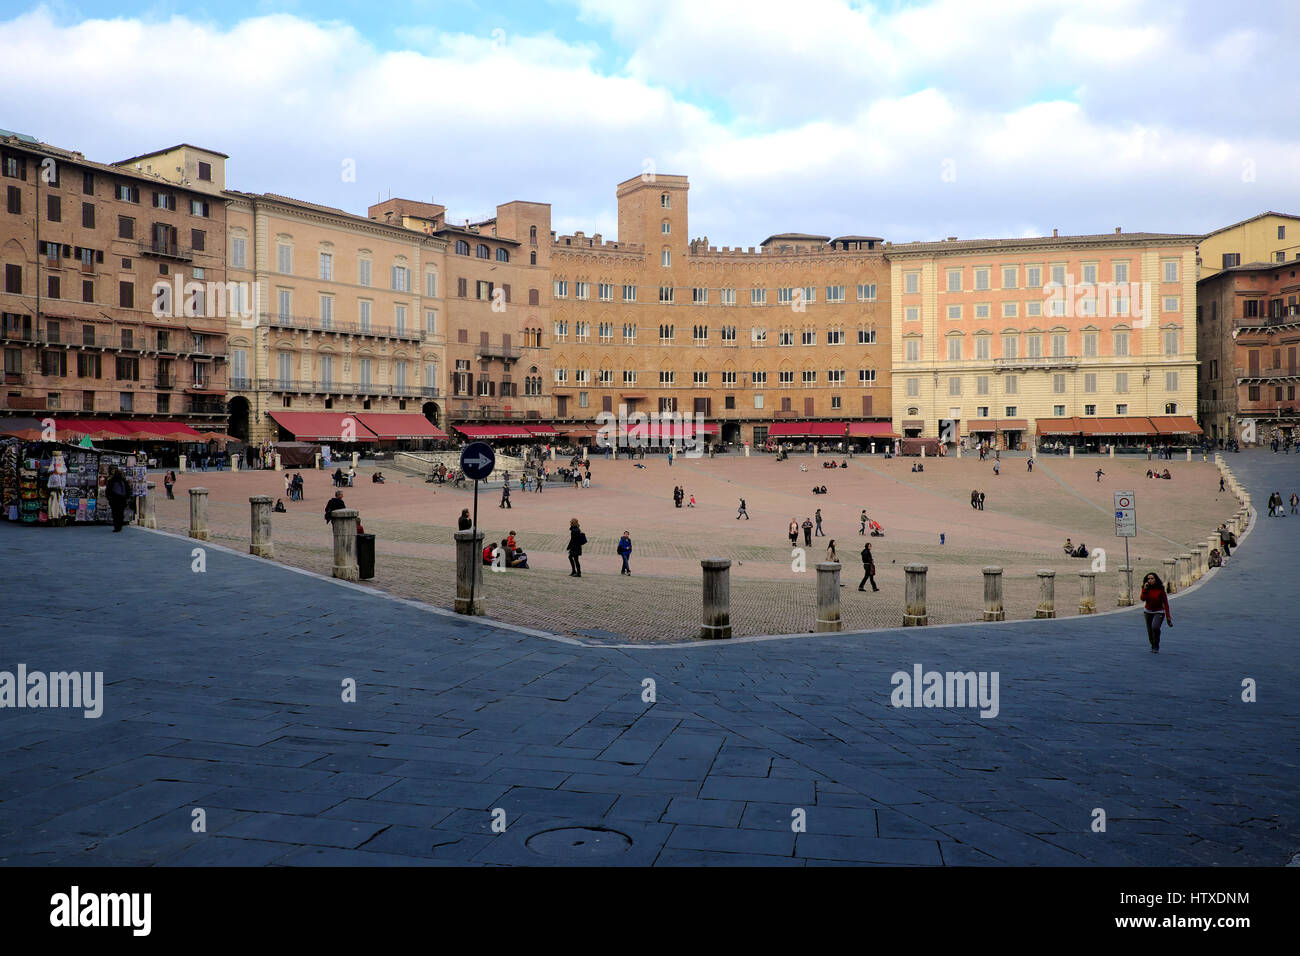 Piazza del Campo, Sienne, Toscane, Italie, Europe - espace public principal du centre historique de la vieille ville, place médiévale où Palio de Sienne est tenu Banque D'Images